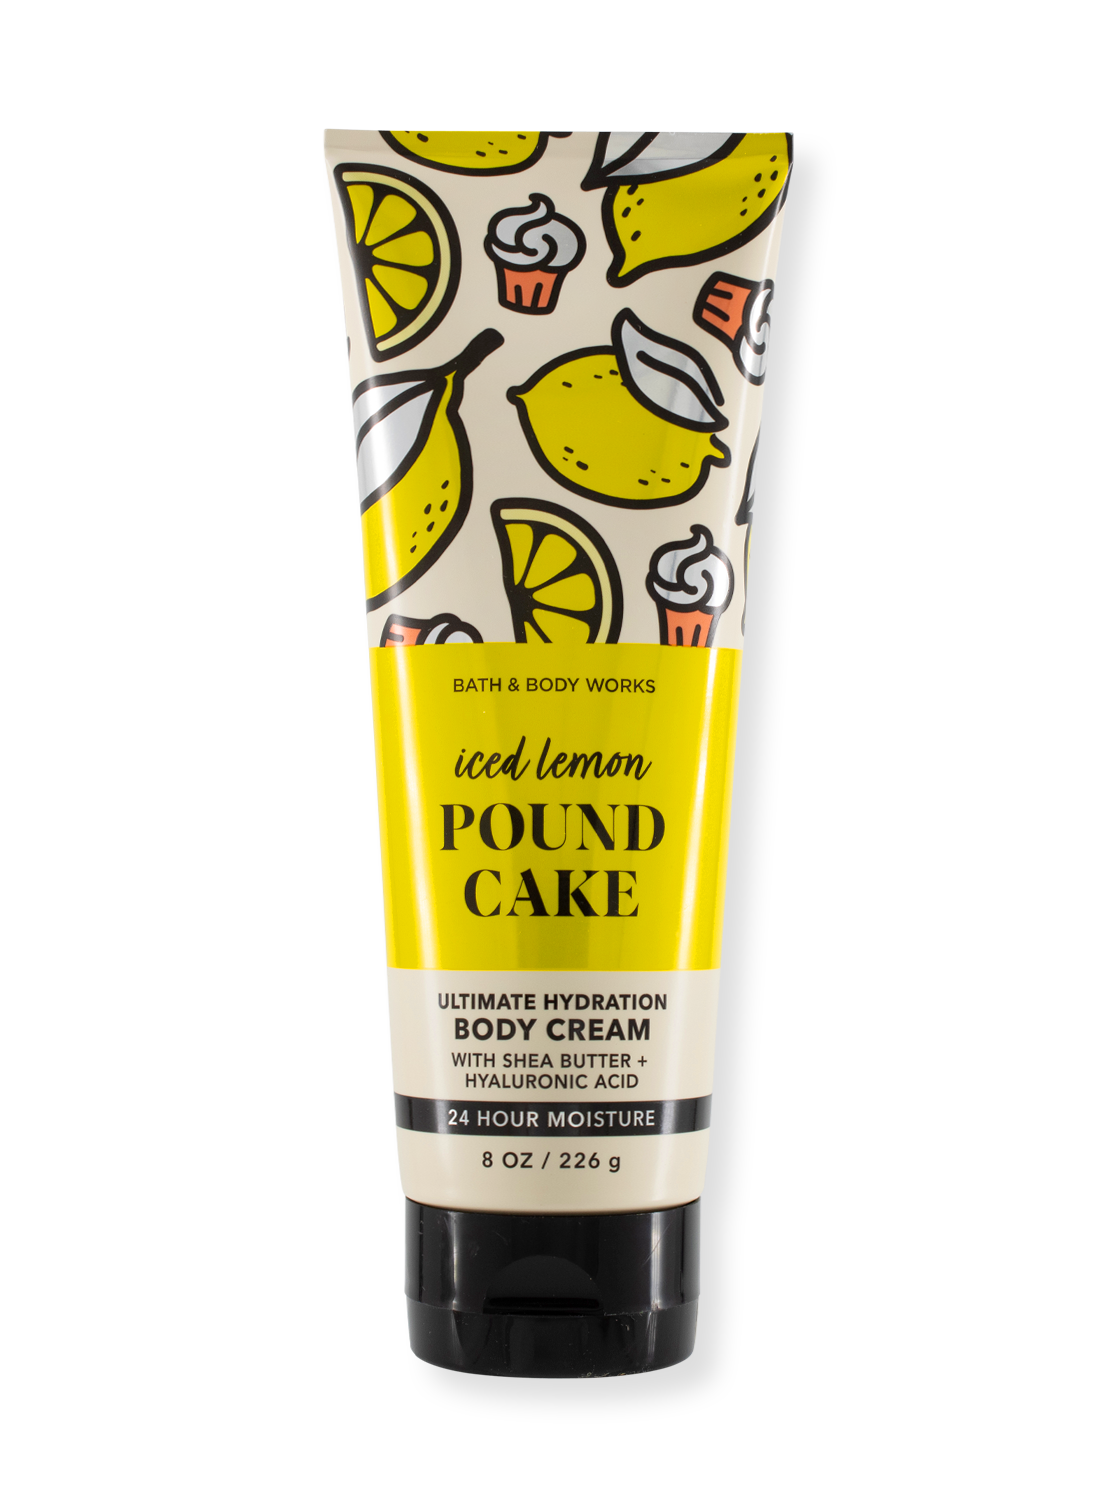 Crème du corps - Gâteau de livre au citron glacé - 226g